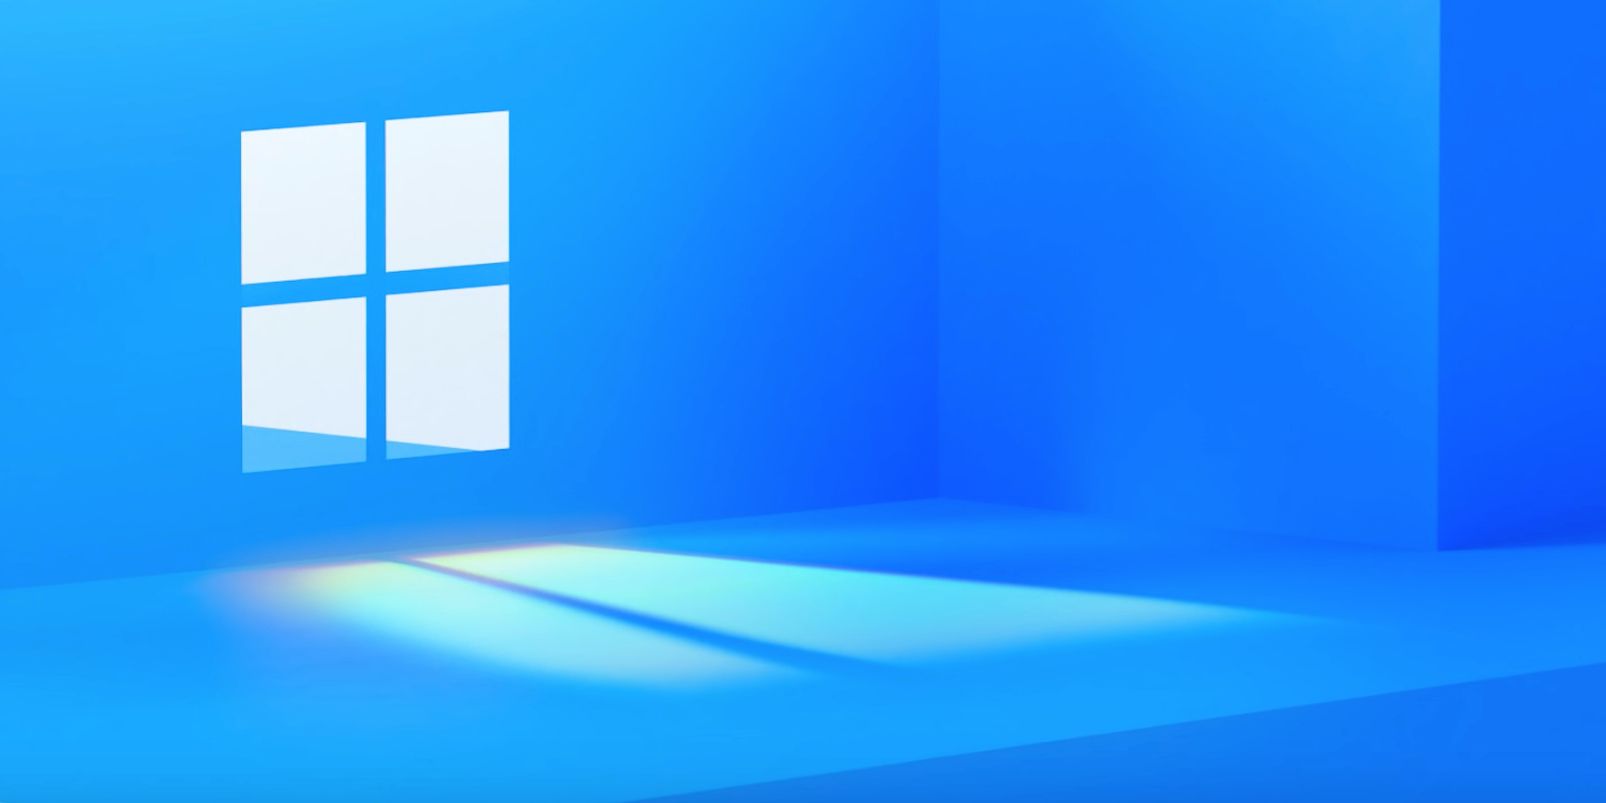 Windows 11 event teaser image